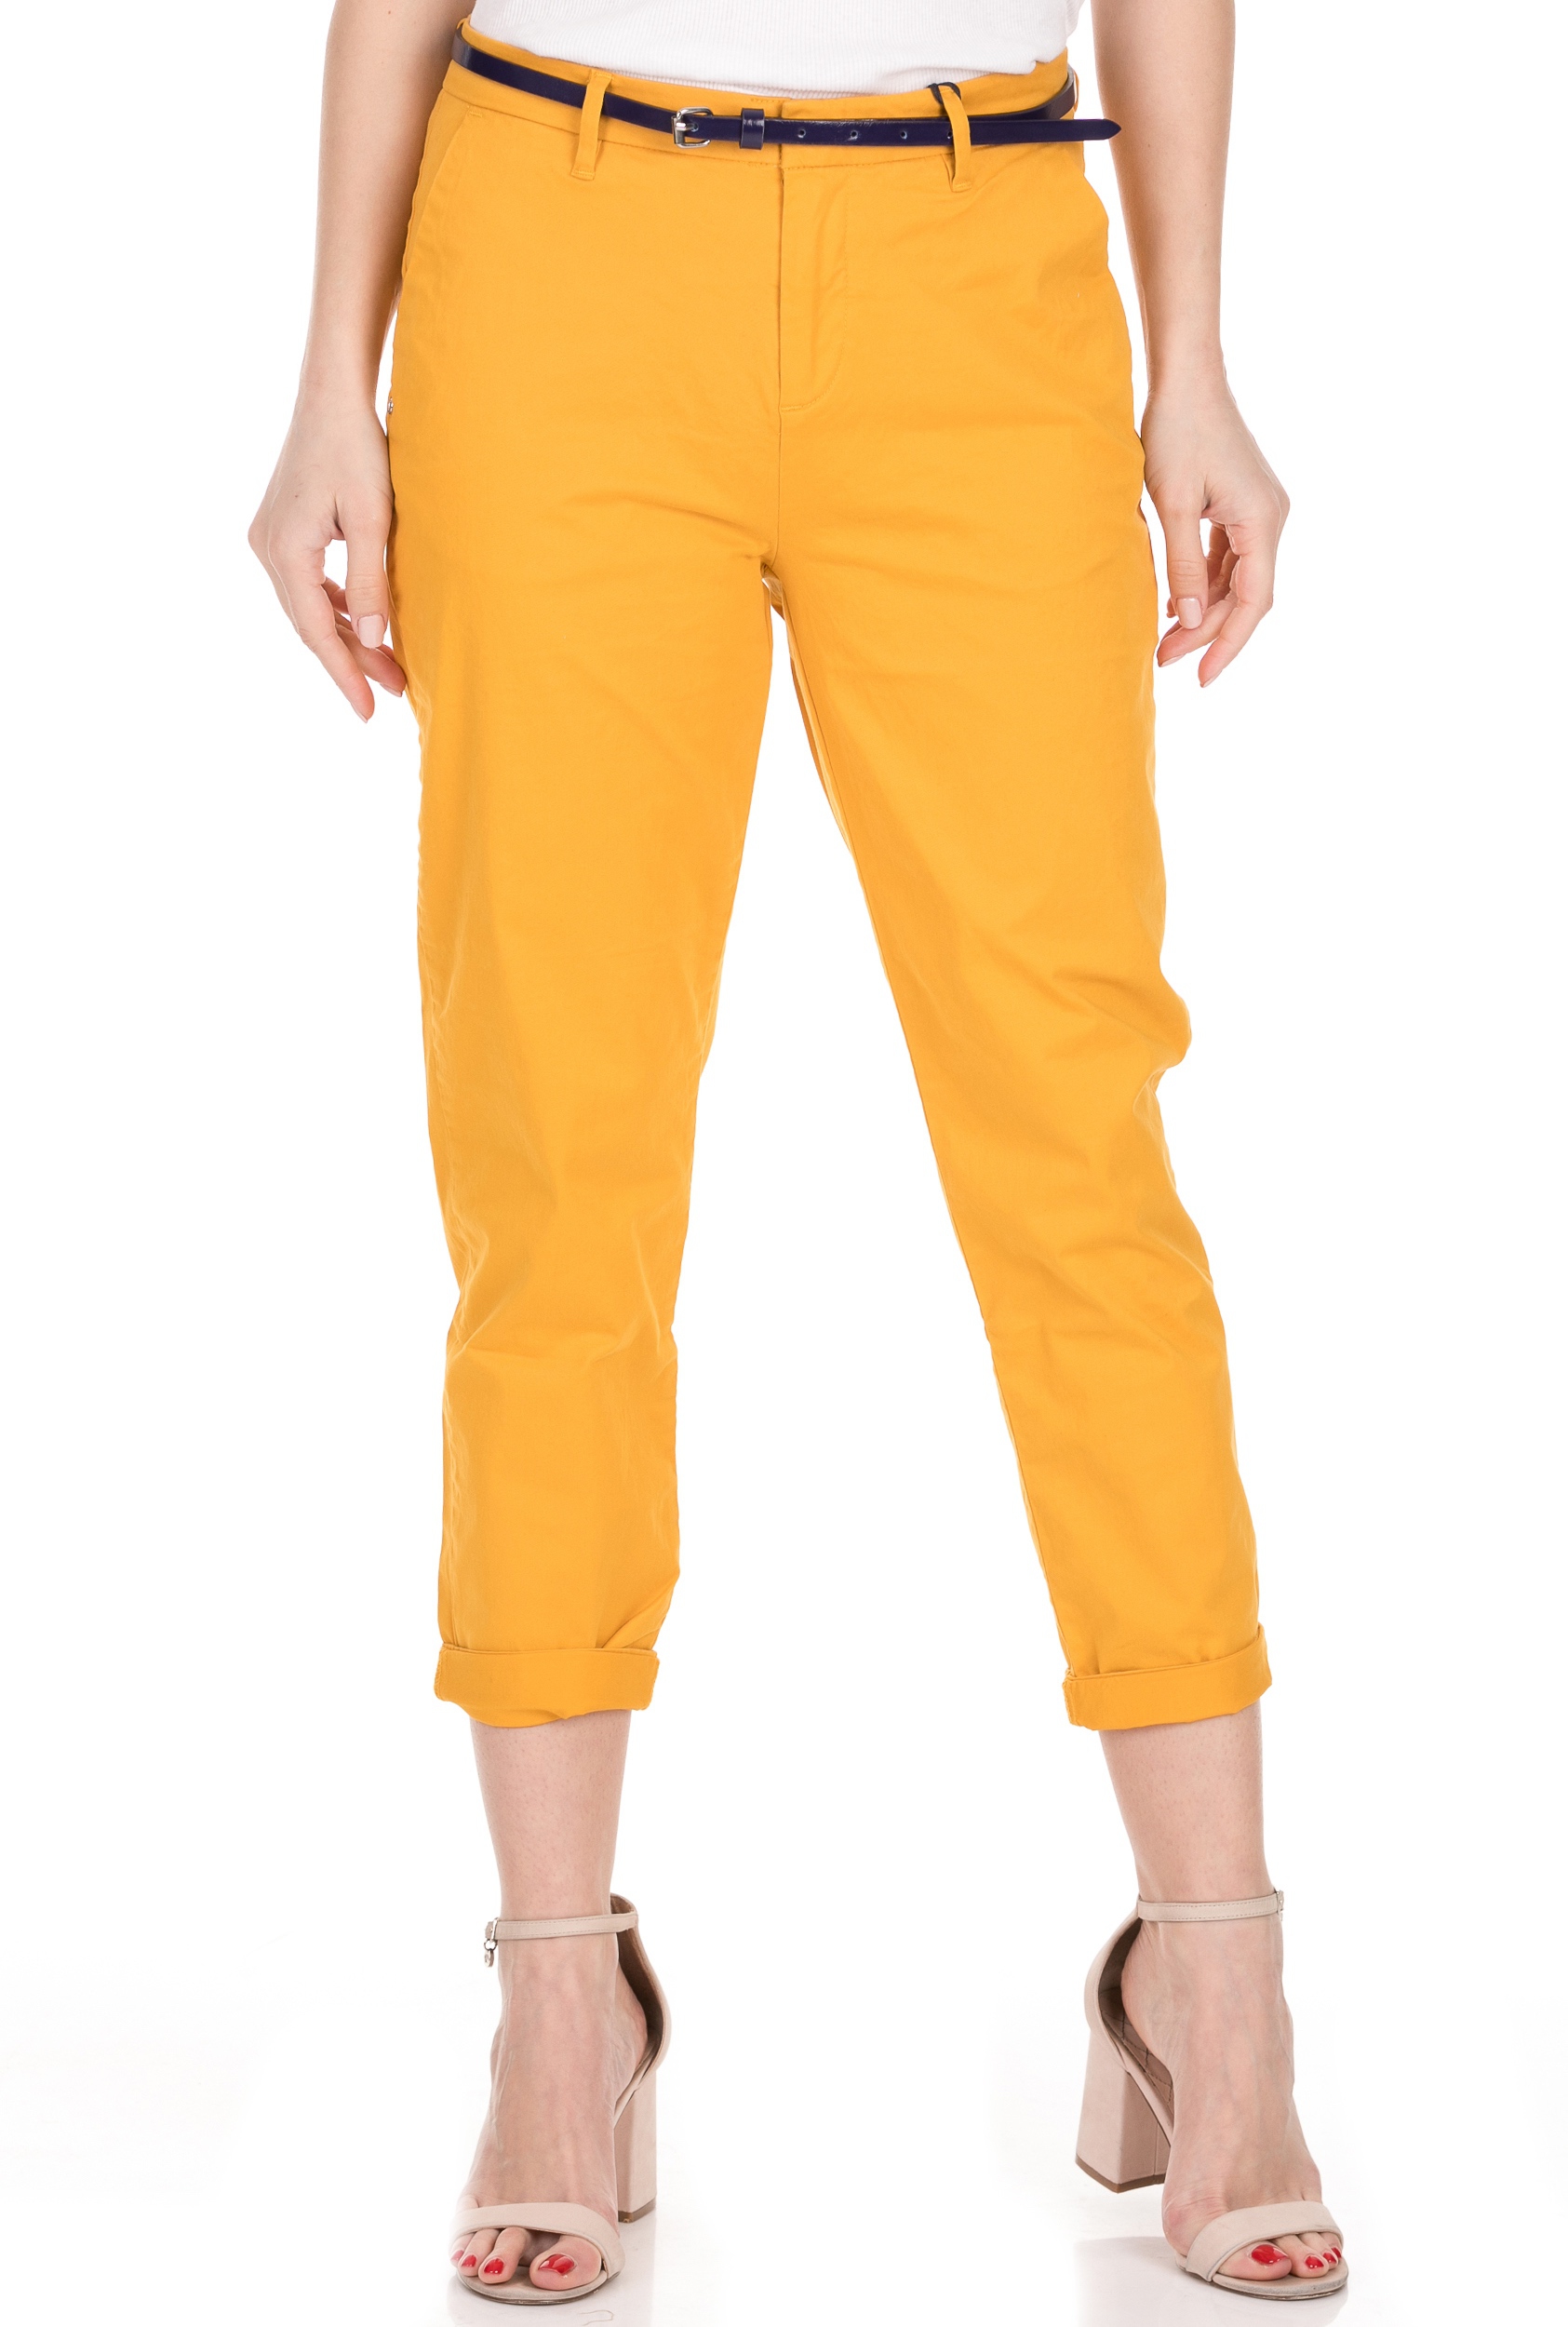 Γυναικεία/Ρούχα/Παντελόνια/Chinos SCOTCH & SODA - Γυναικείο παντελόνι SCOTCH & SODA Ams Blauw κίτρινο